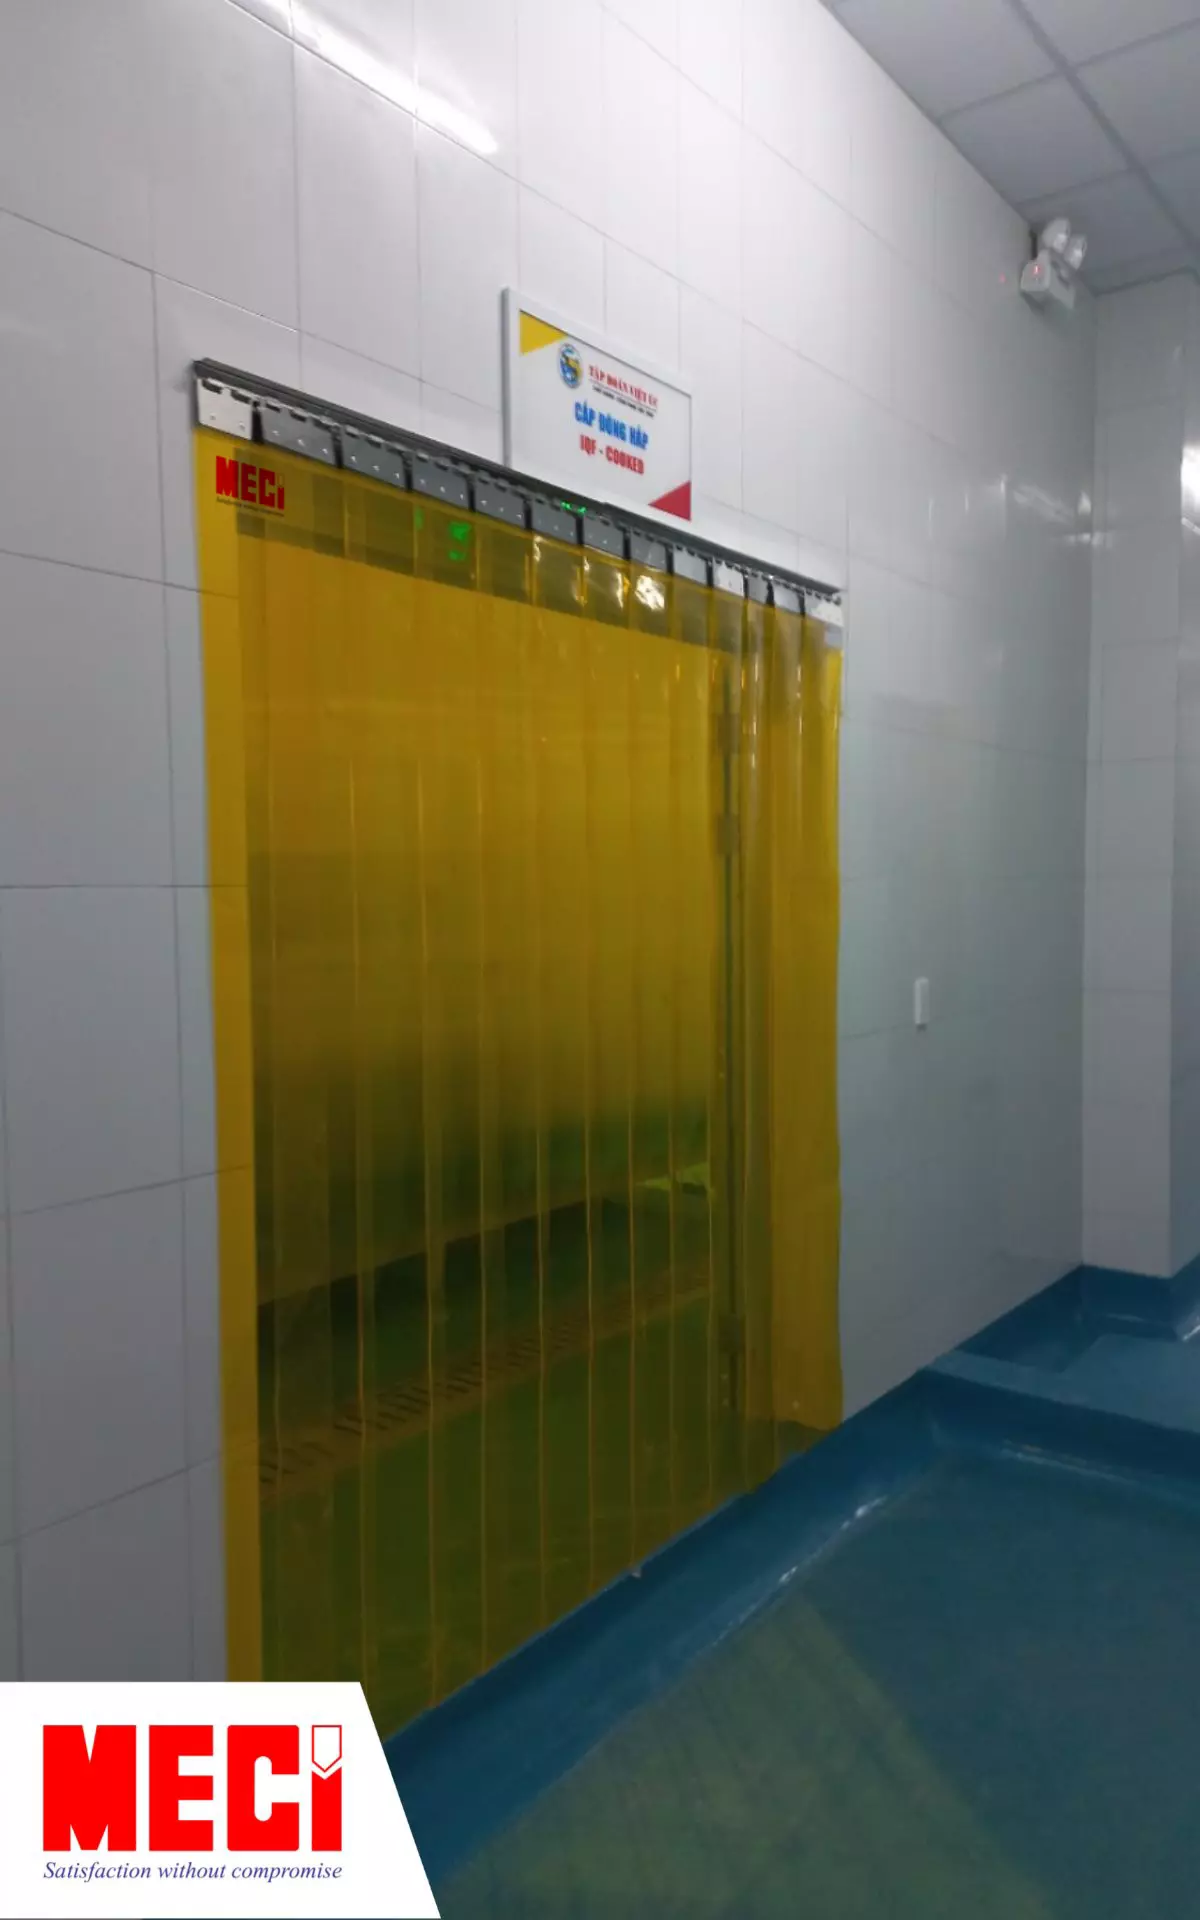 1 cái rèm nhựa PVC màu vàng được lắp trước lối vào, phía trên có biển hiệu phòng cấp đông hấp